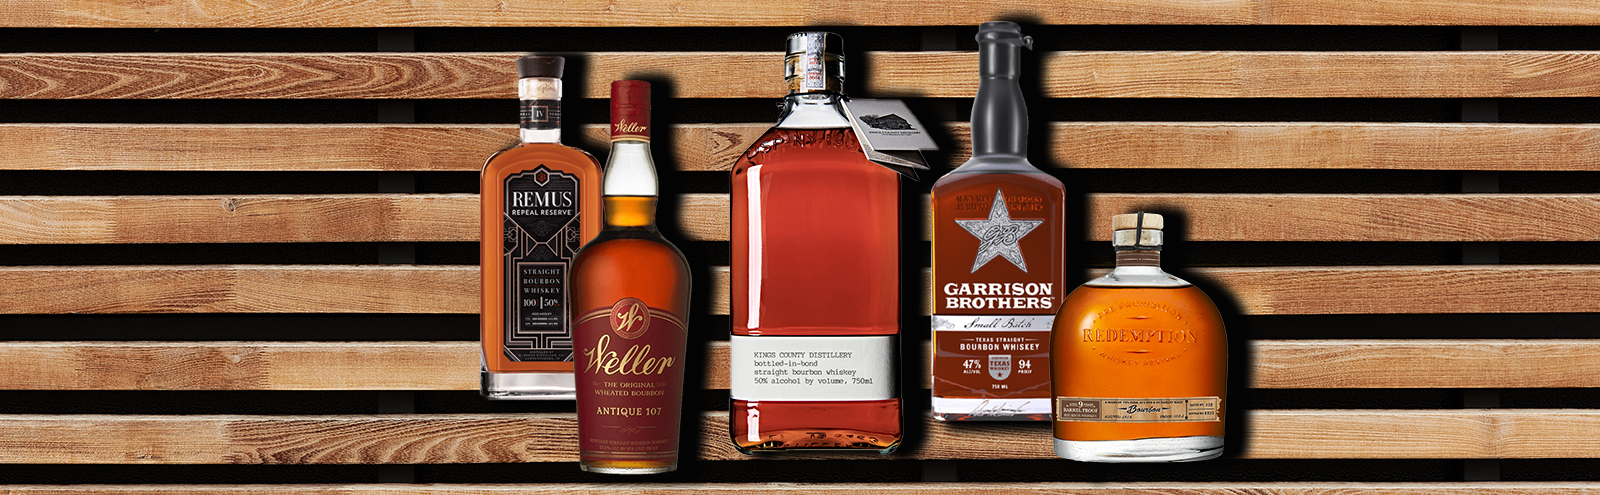 10 Best Bottles of Bourbon Whiskey Under $100